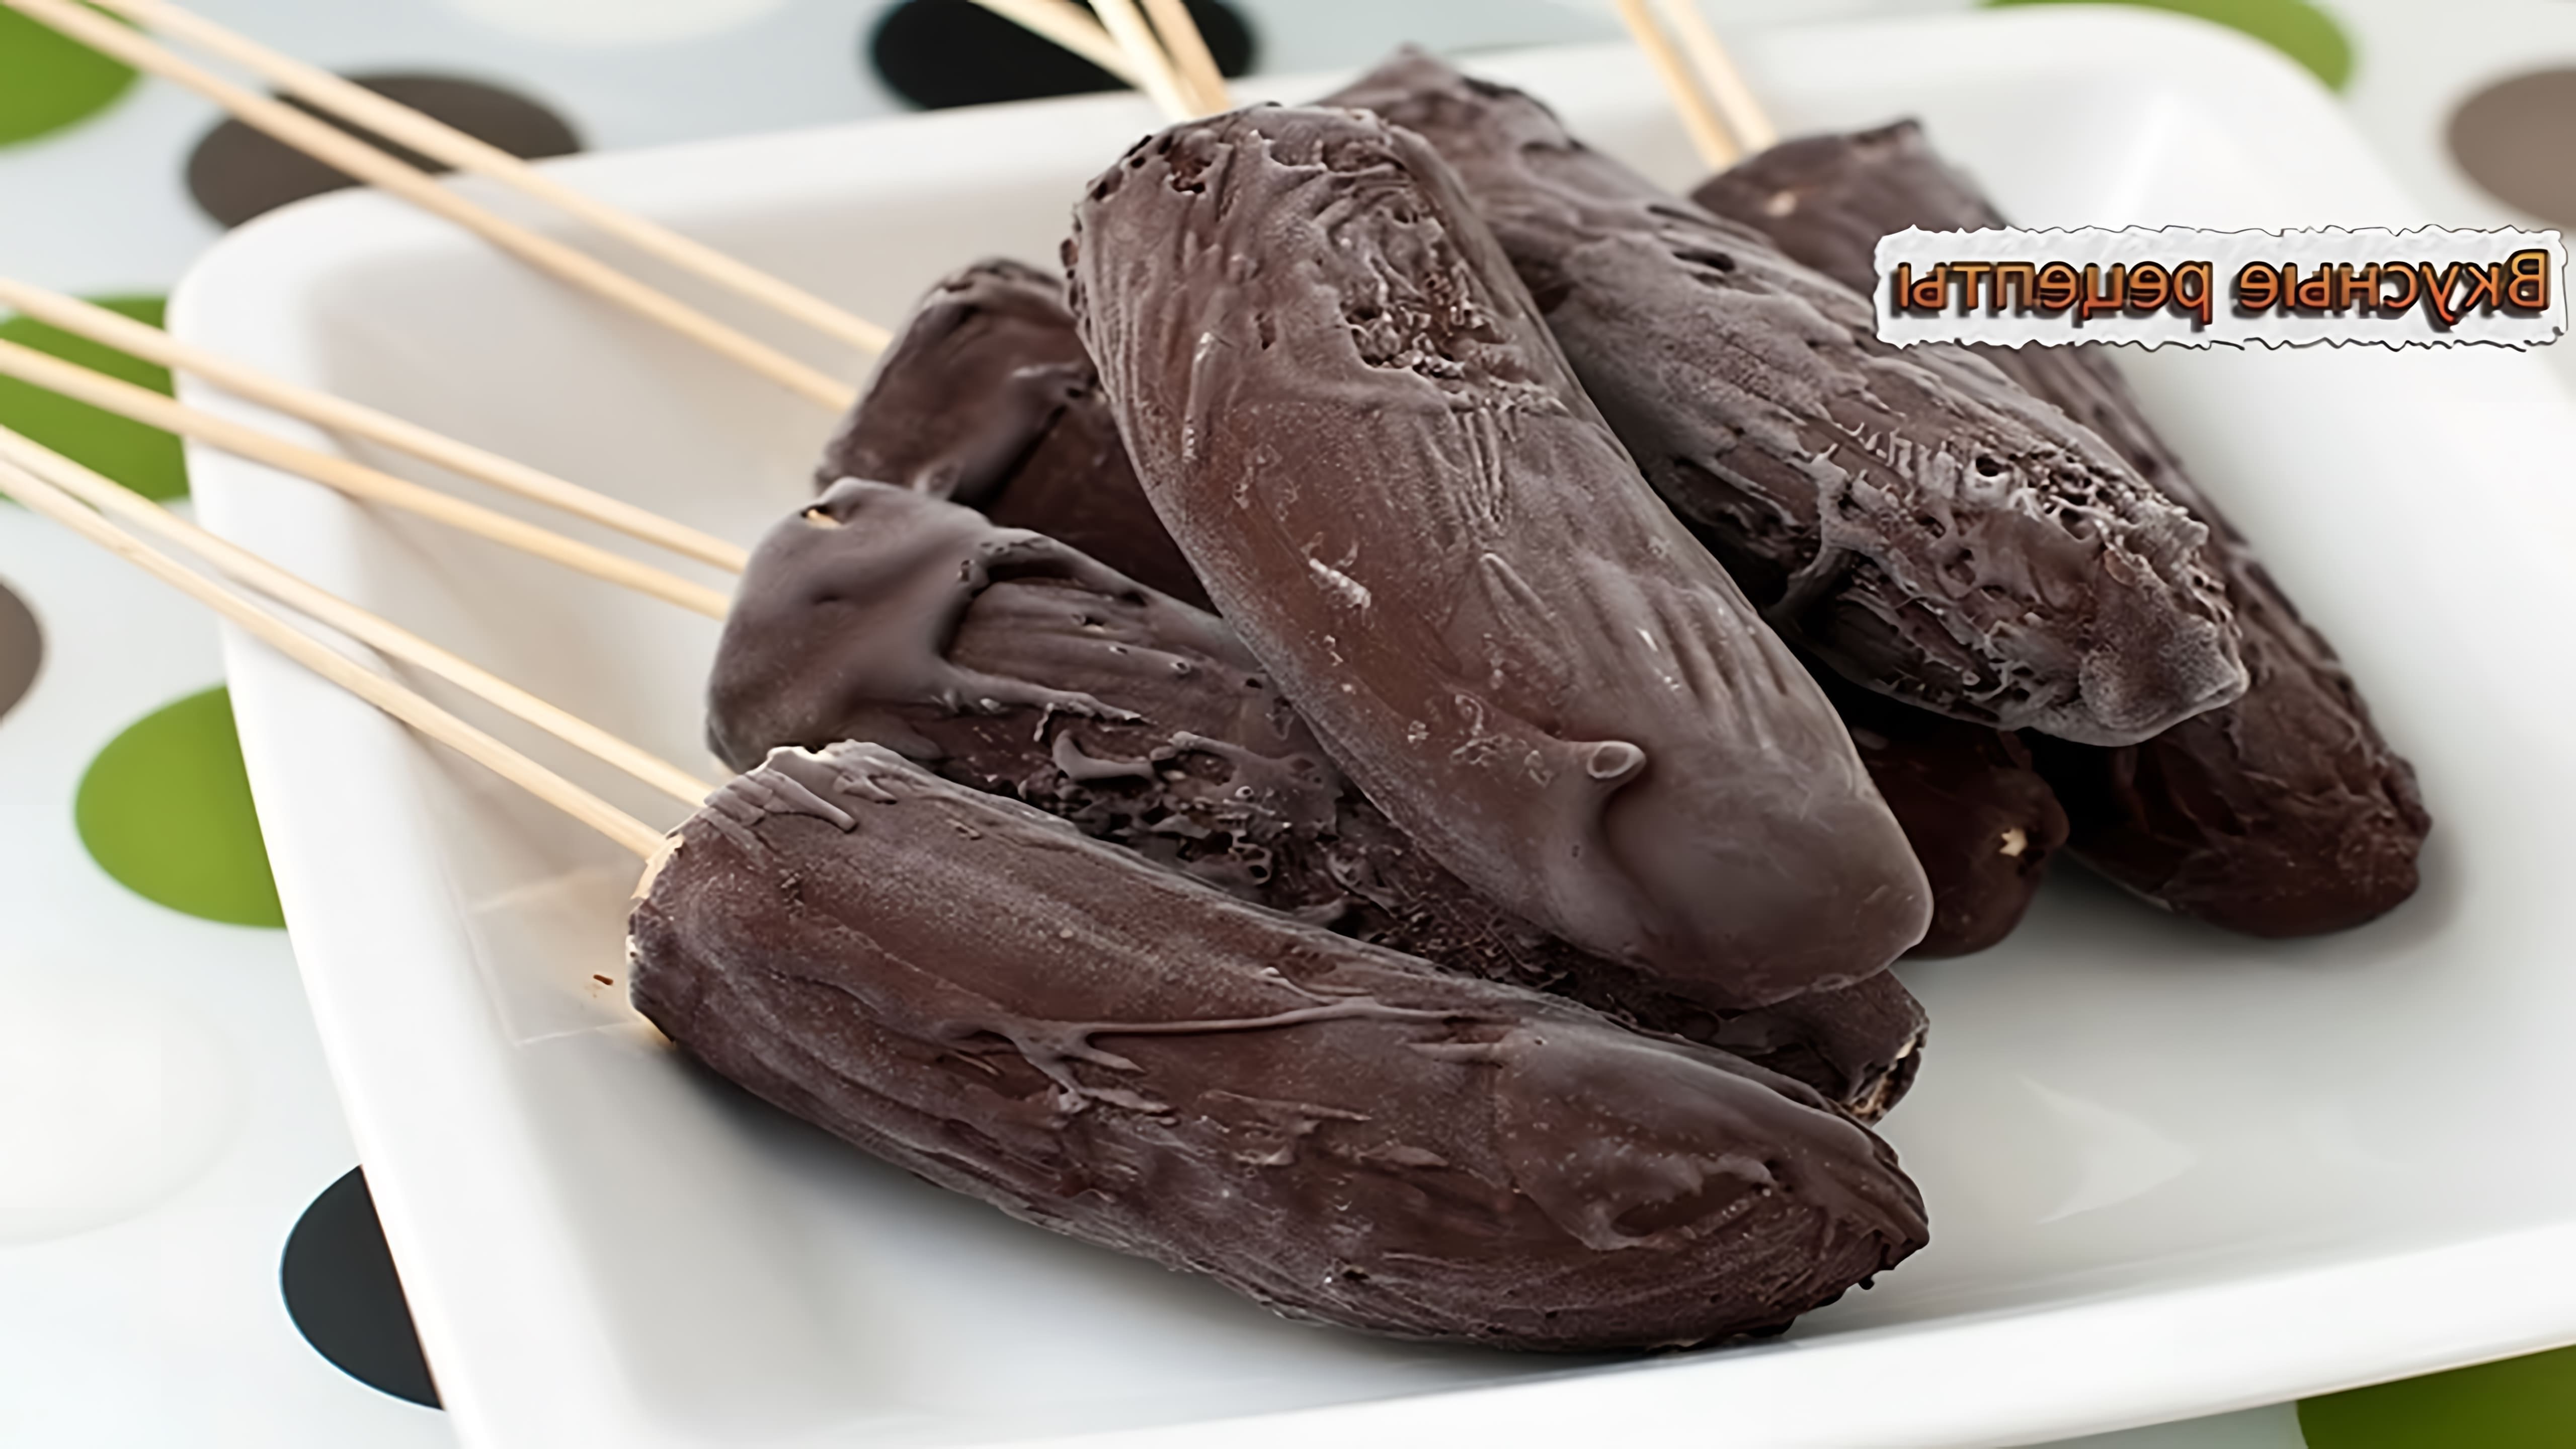 Замороженные бананы в шоколаде - это вкусное и простое блюдо, которое можно приготовить дома